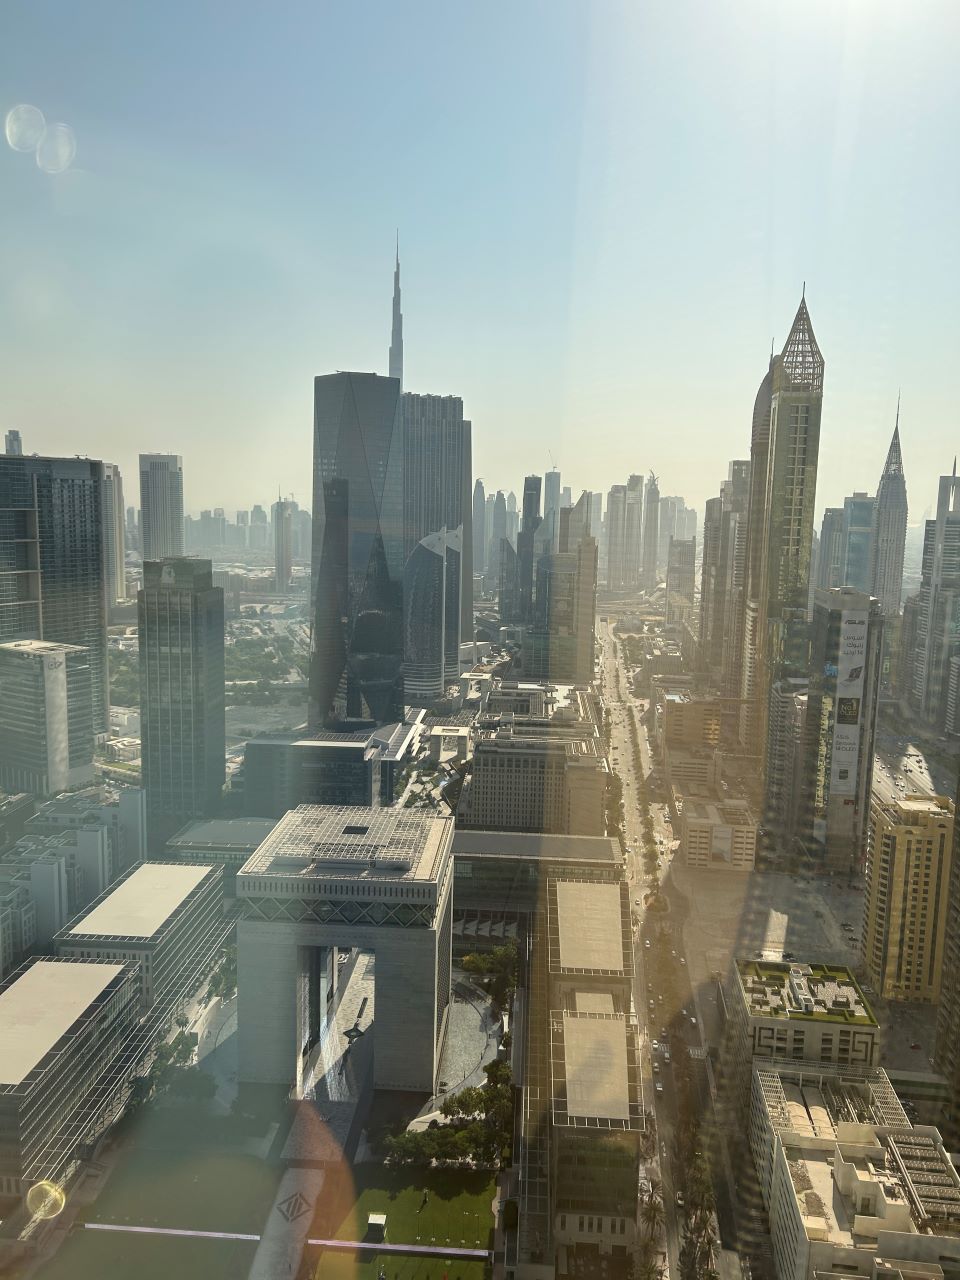 Jumeirah Emirates Tower overlooking Dubai